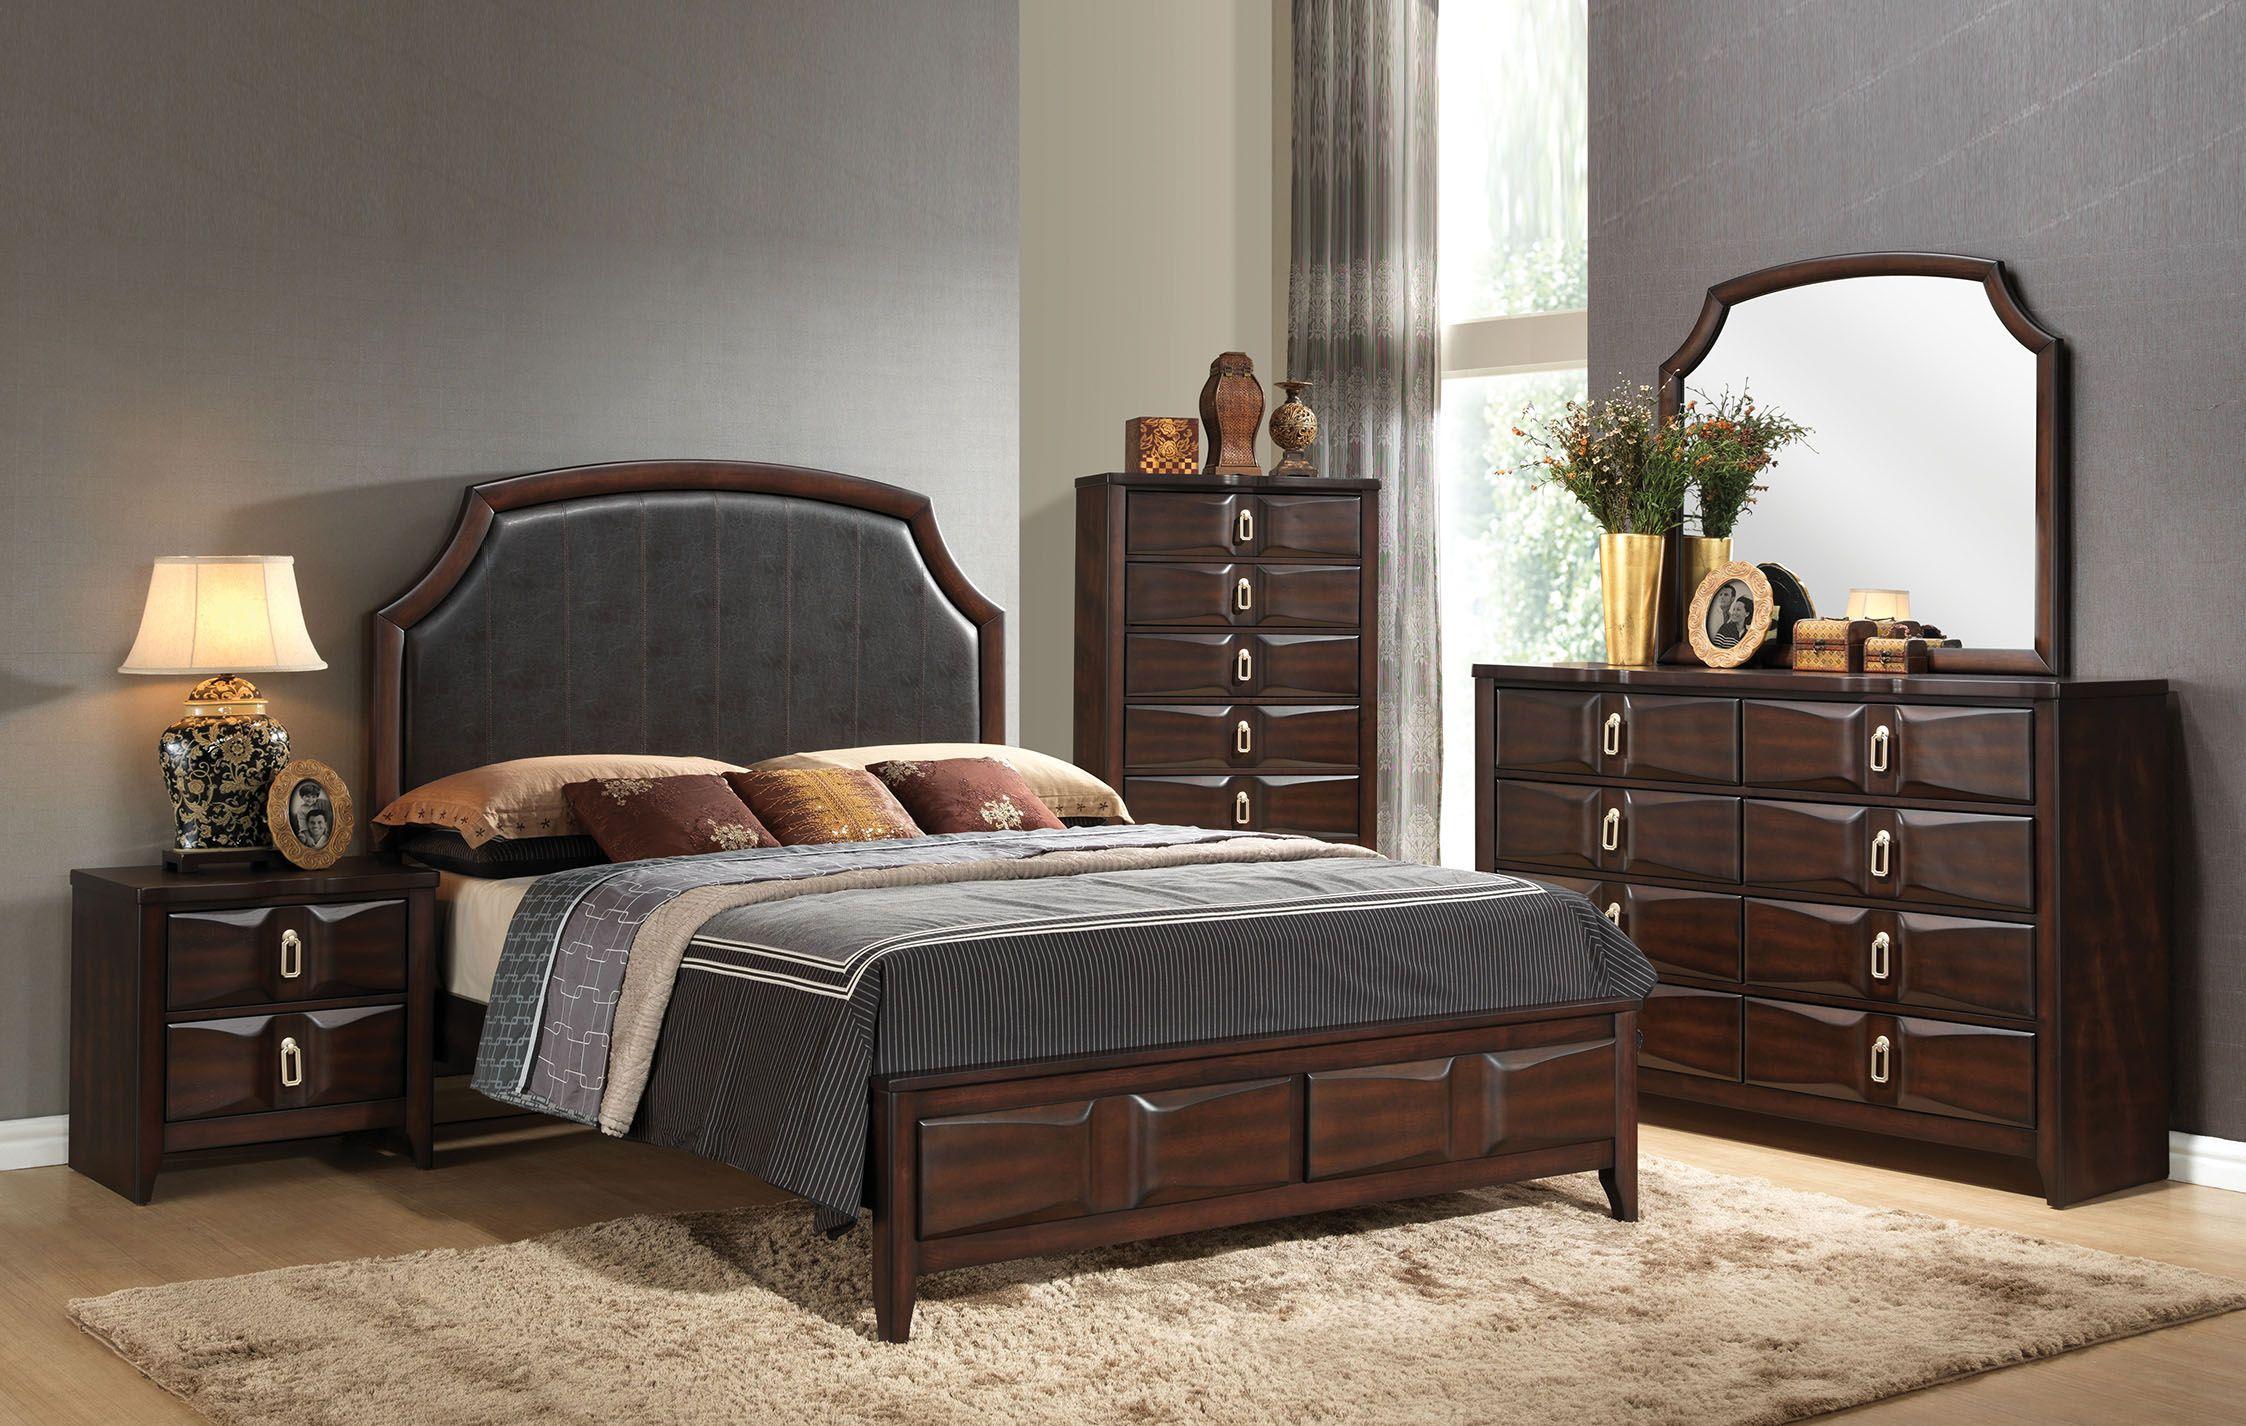 Contemporary, Modern Panel Bedroom Set Lancaster Lancaster-24567EK-Set-5 in Espresso, Brown Polyurethane